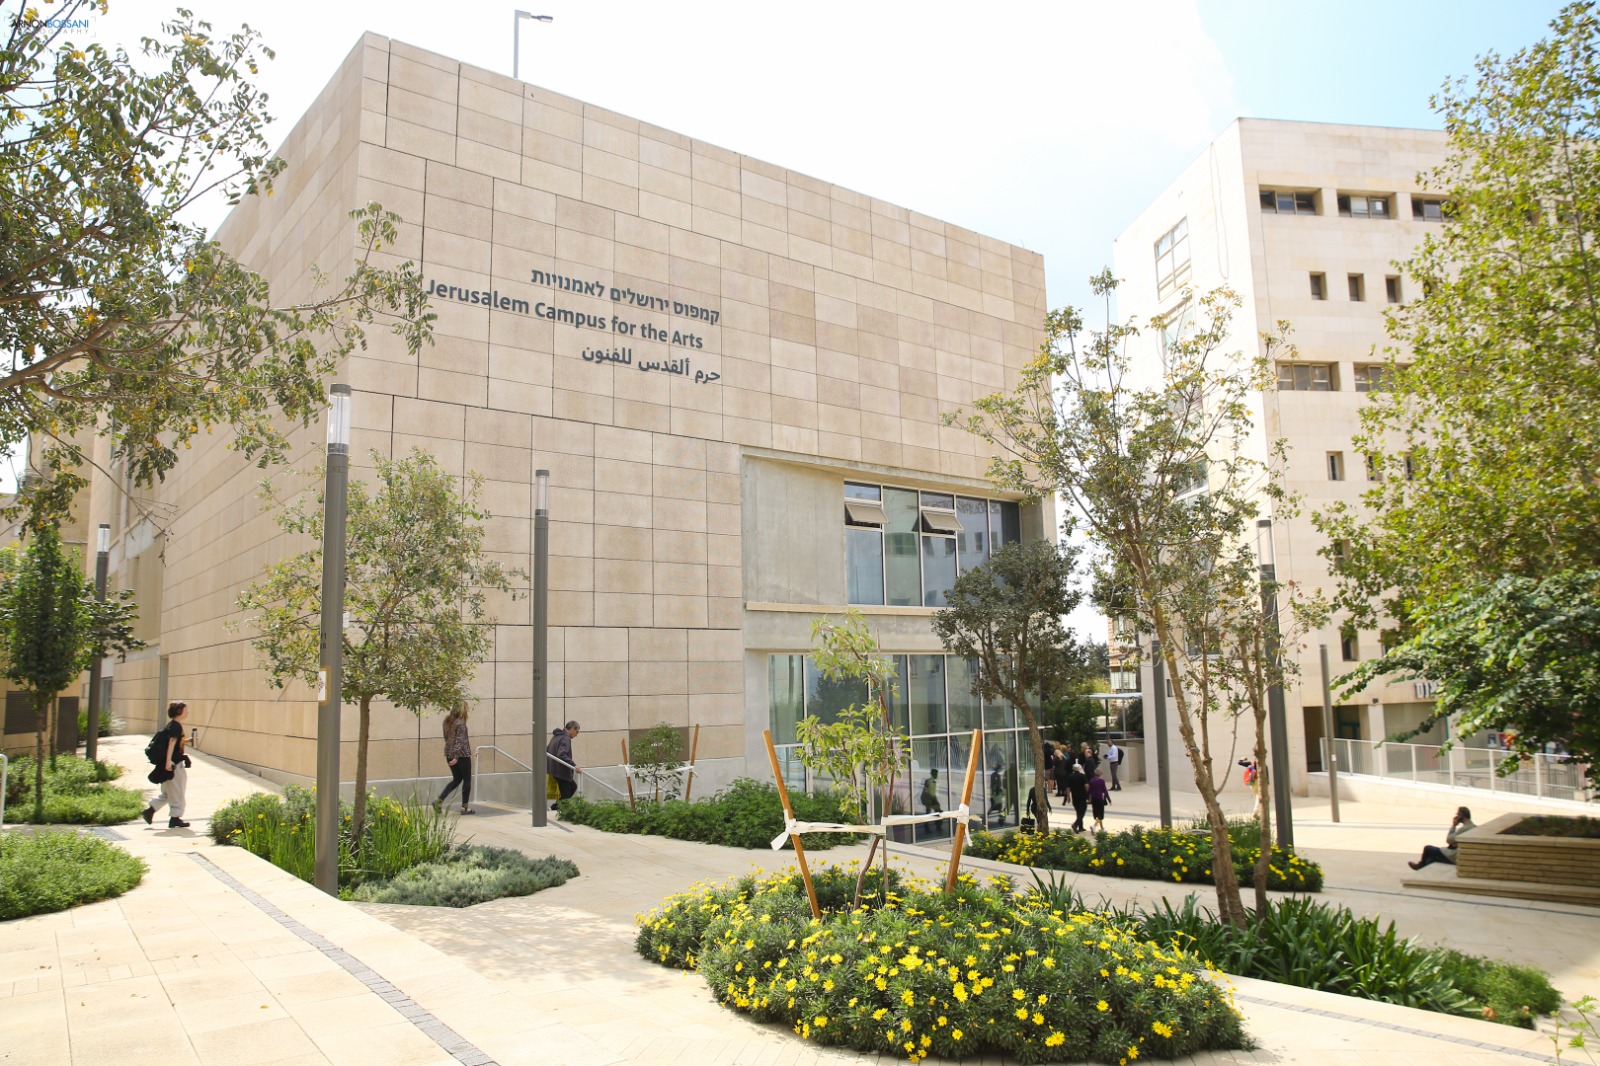 קמפוס ירושלים לאמנויות (צילום: ארנון בוסאני)